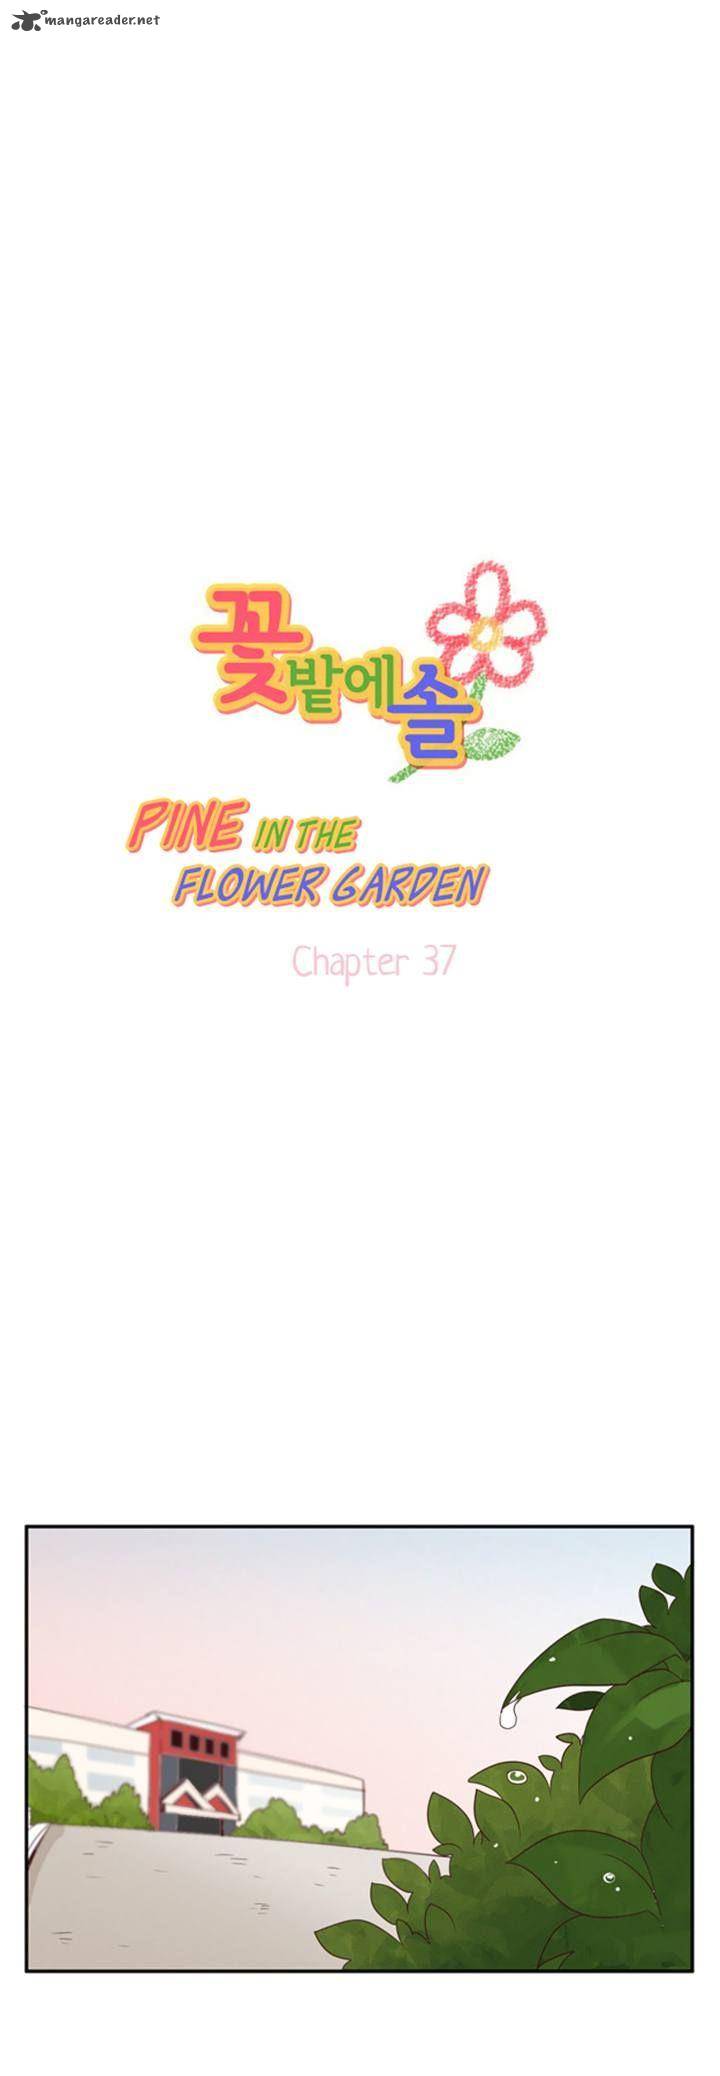 pine_in_the_flower_garden_37_1